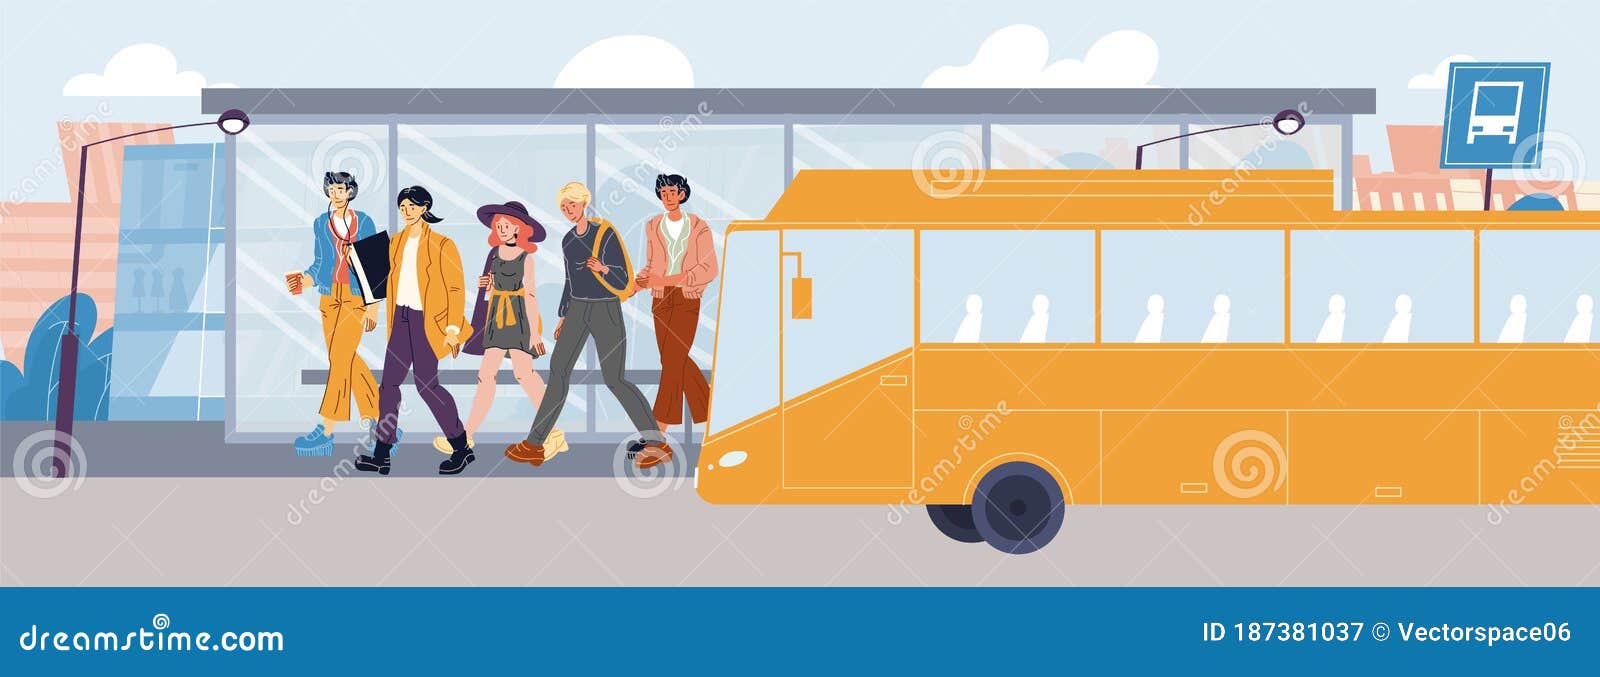 На остановке общественного транспорта подростки нецензурно. Люди выходят из автобуса. Автобус с людьми вектор. Человек выходит из автобуса рисунок. Пассажир на остановке вектор.